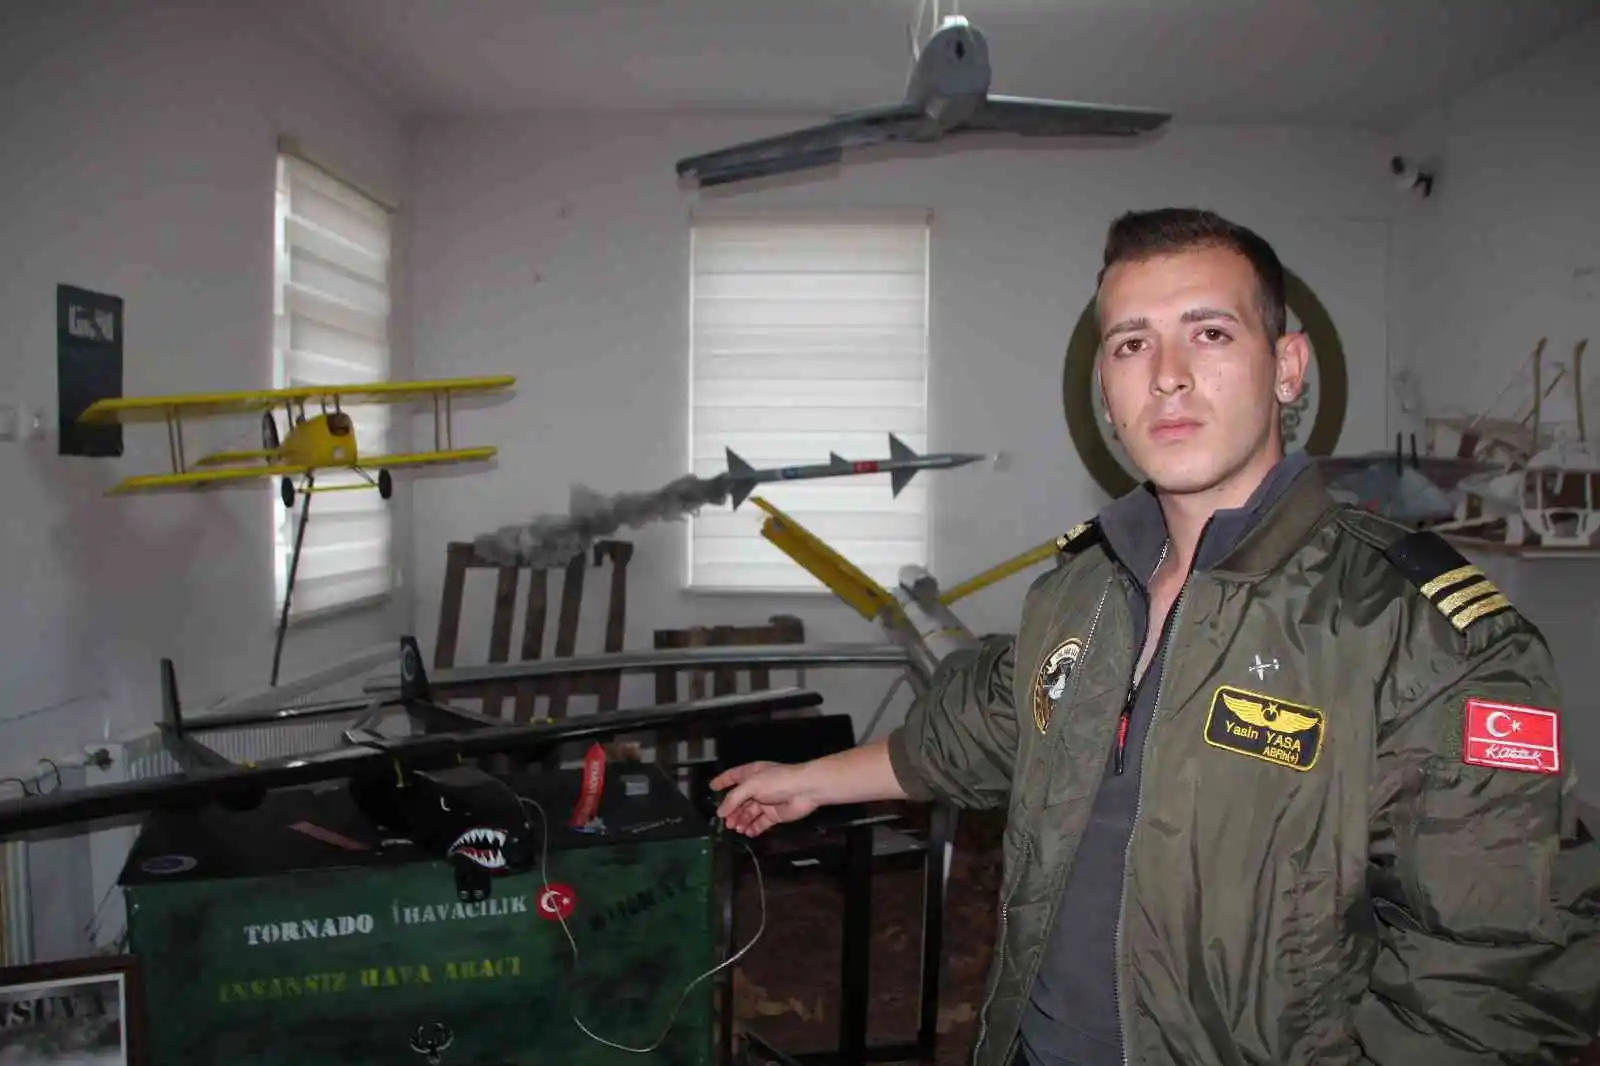 Şehit Polis Tufan Kansuva İnsansız Hava Aracı seri üretim aşamasında
